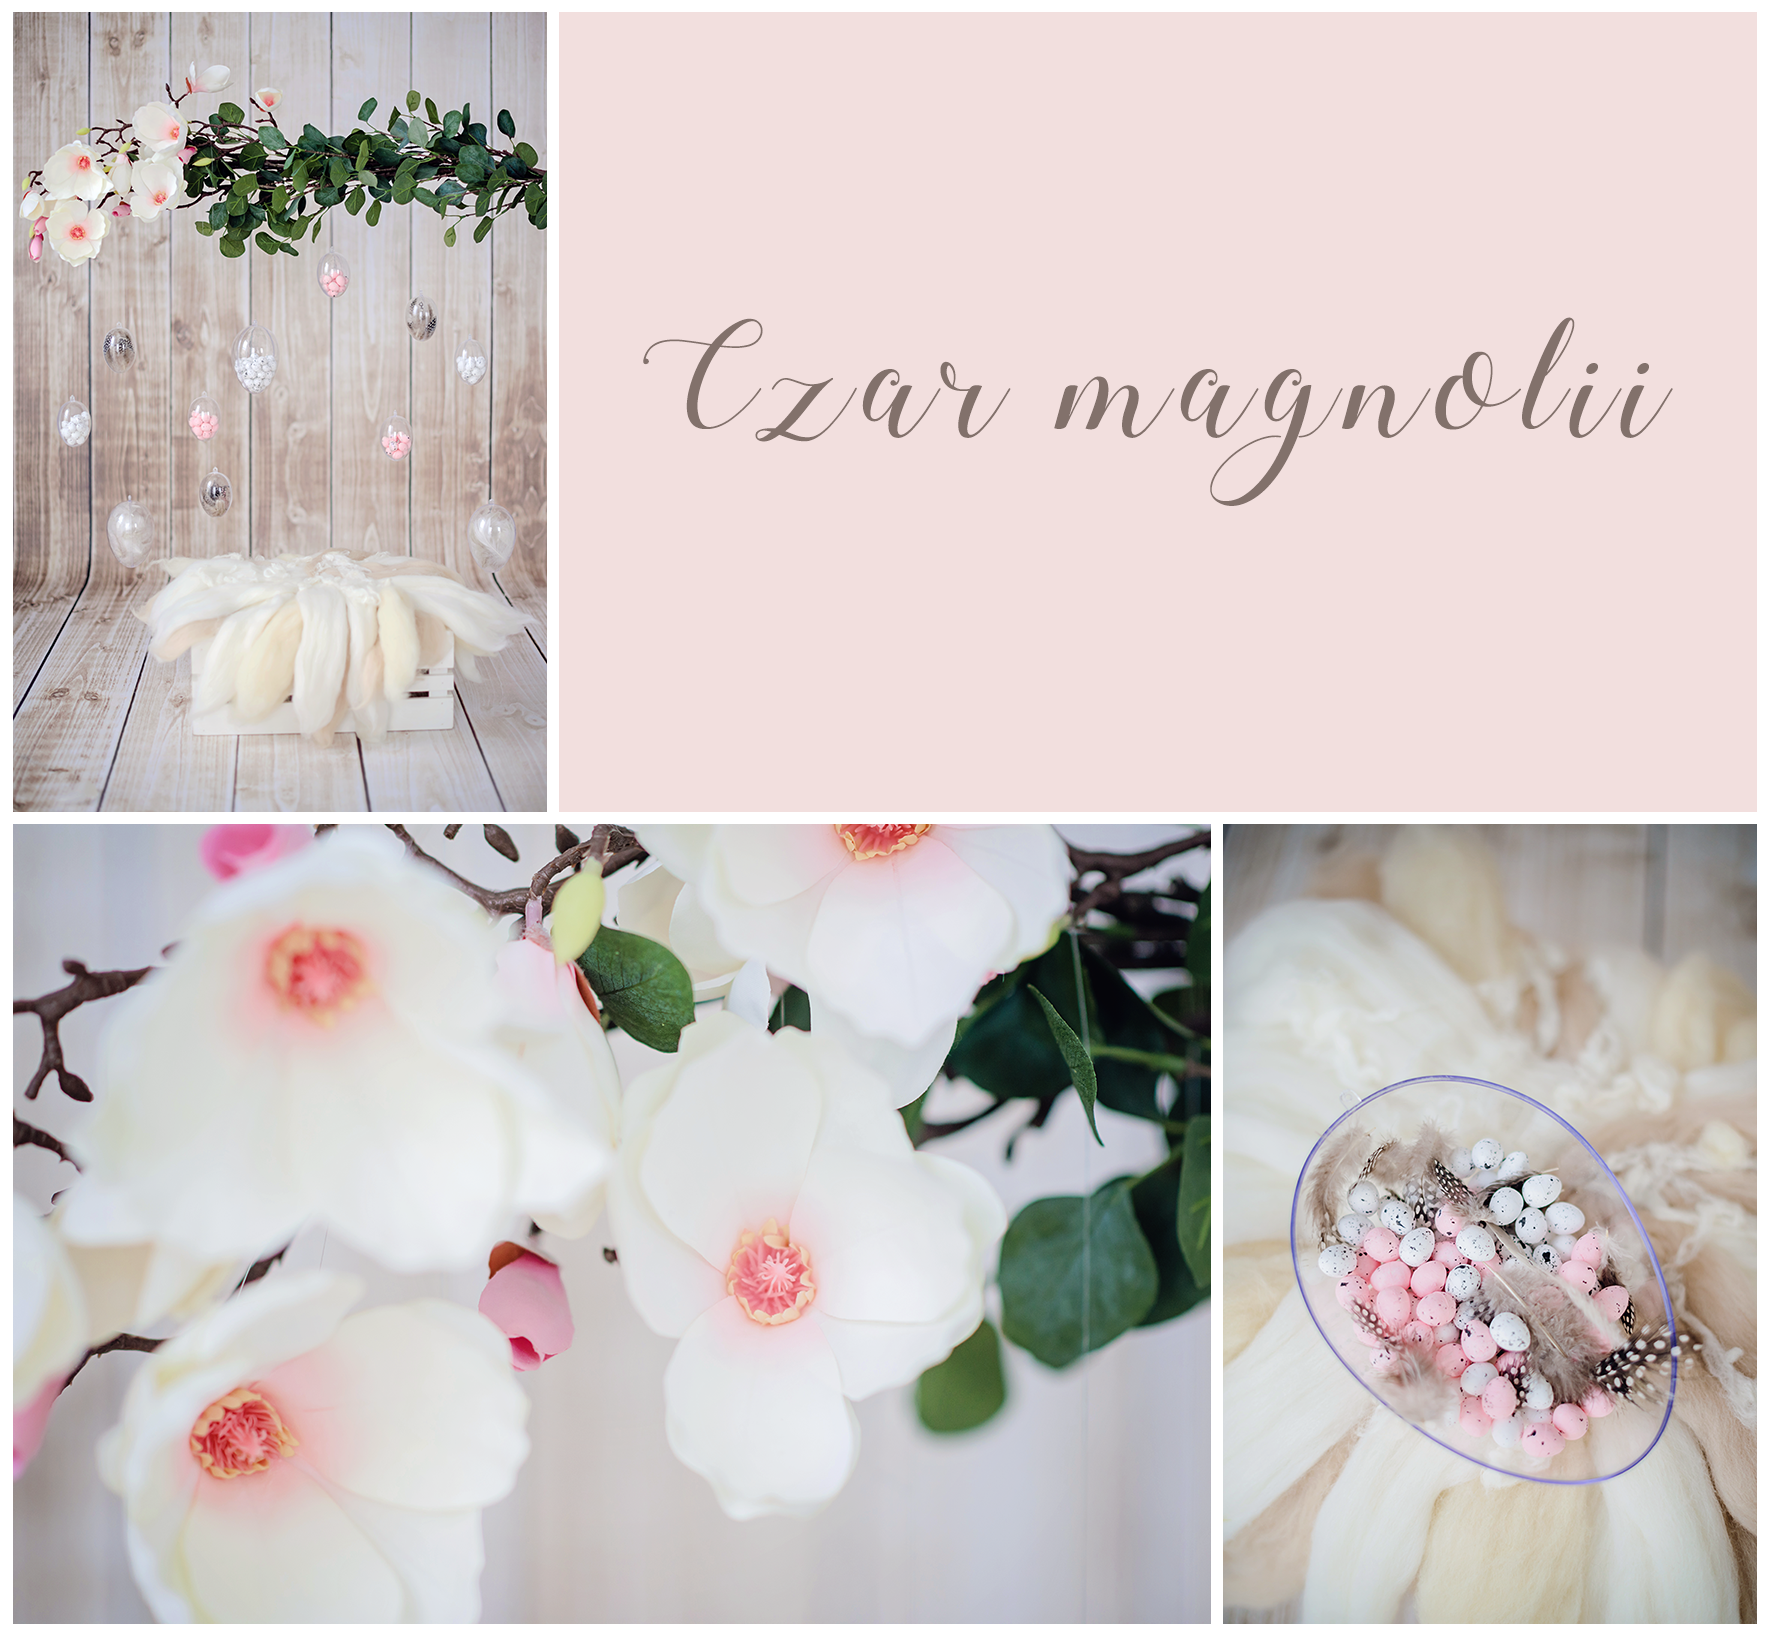 Czar magnolii.png